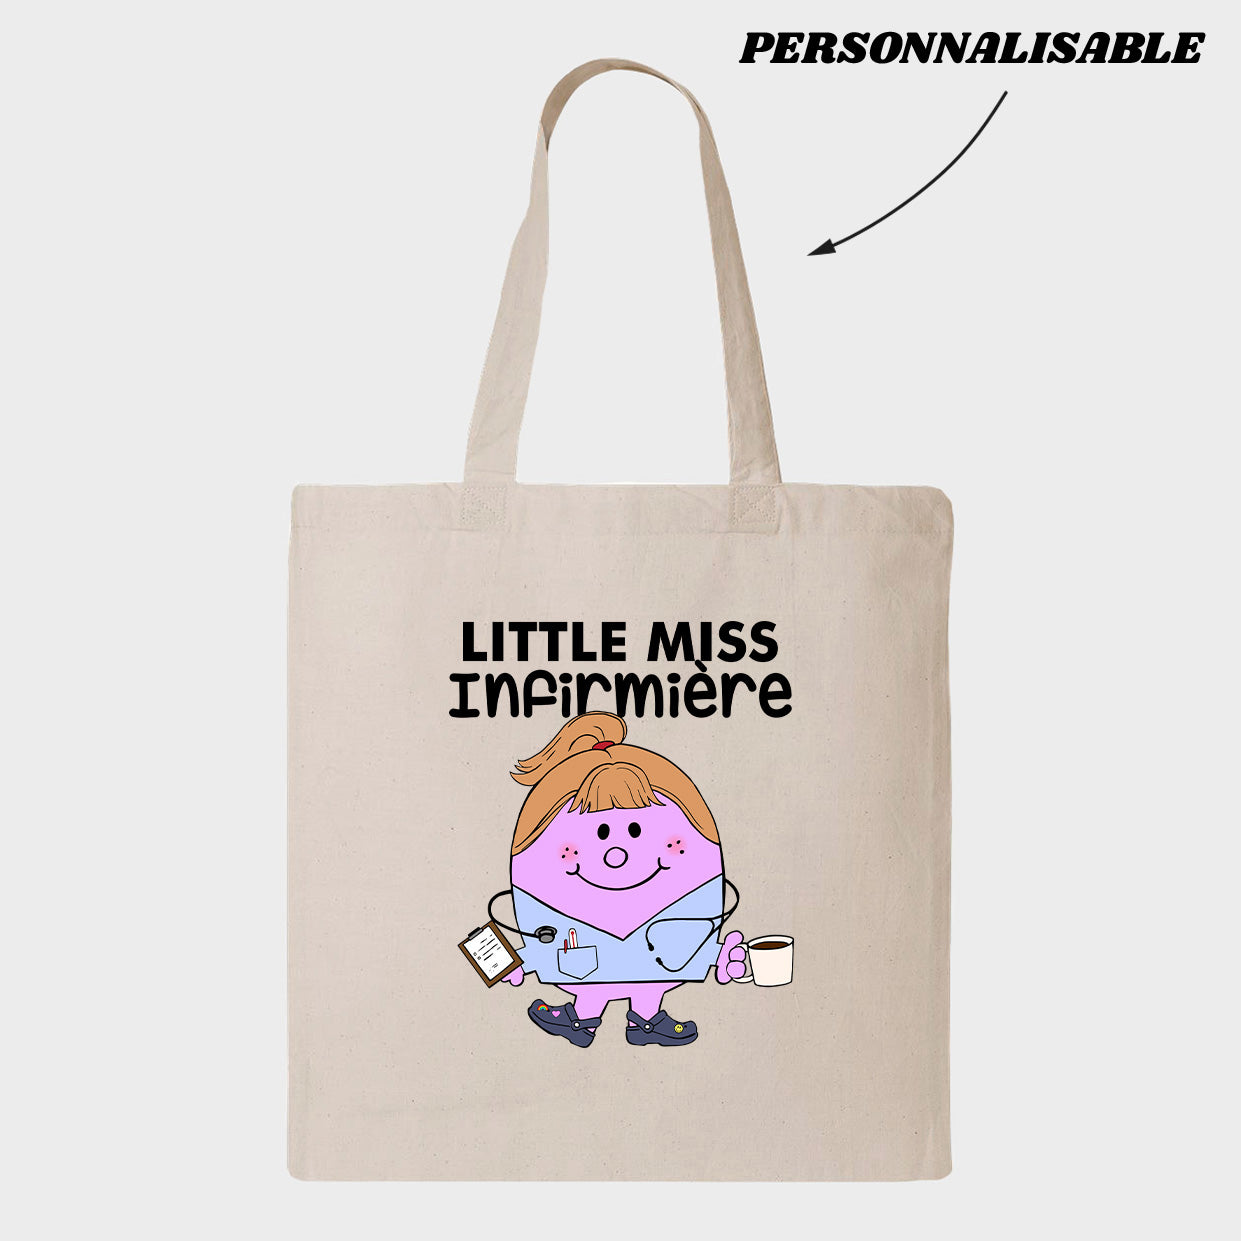 LITTLE MISS *PERSONNEL DE LA SANTÉ* tote bag personnalisable - tamelo boutique